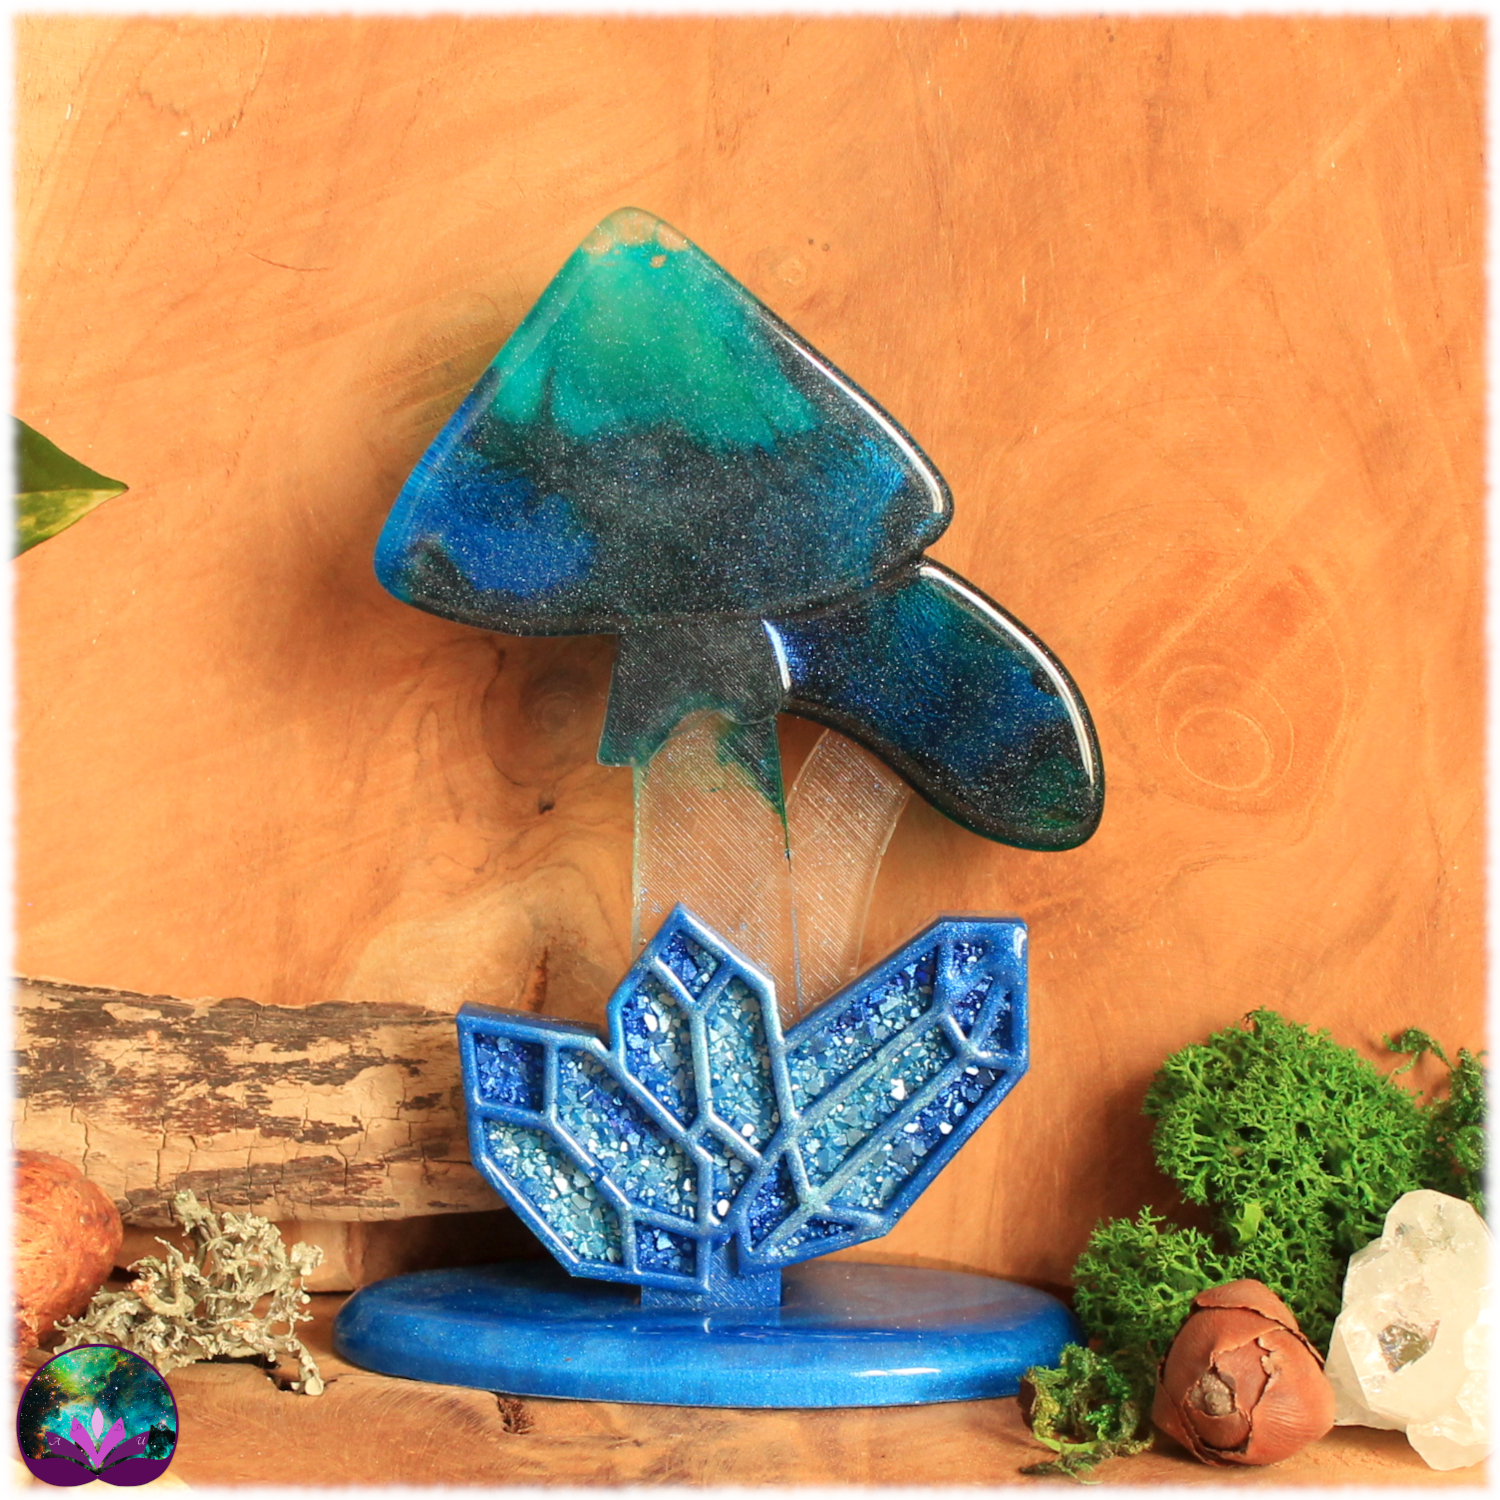 Champignon féerique avec cristaux sur support, nuances de bleu et turquoise